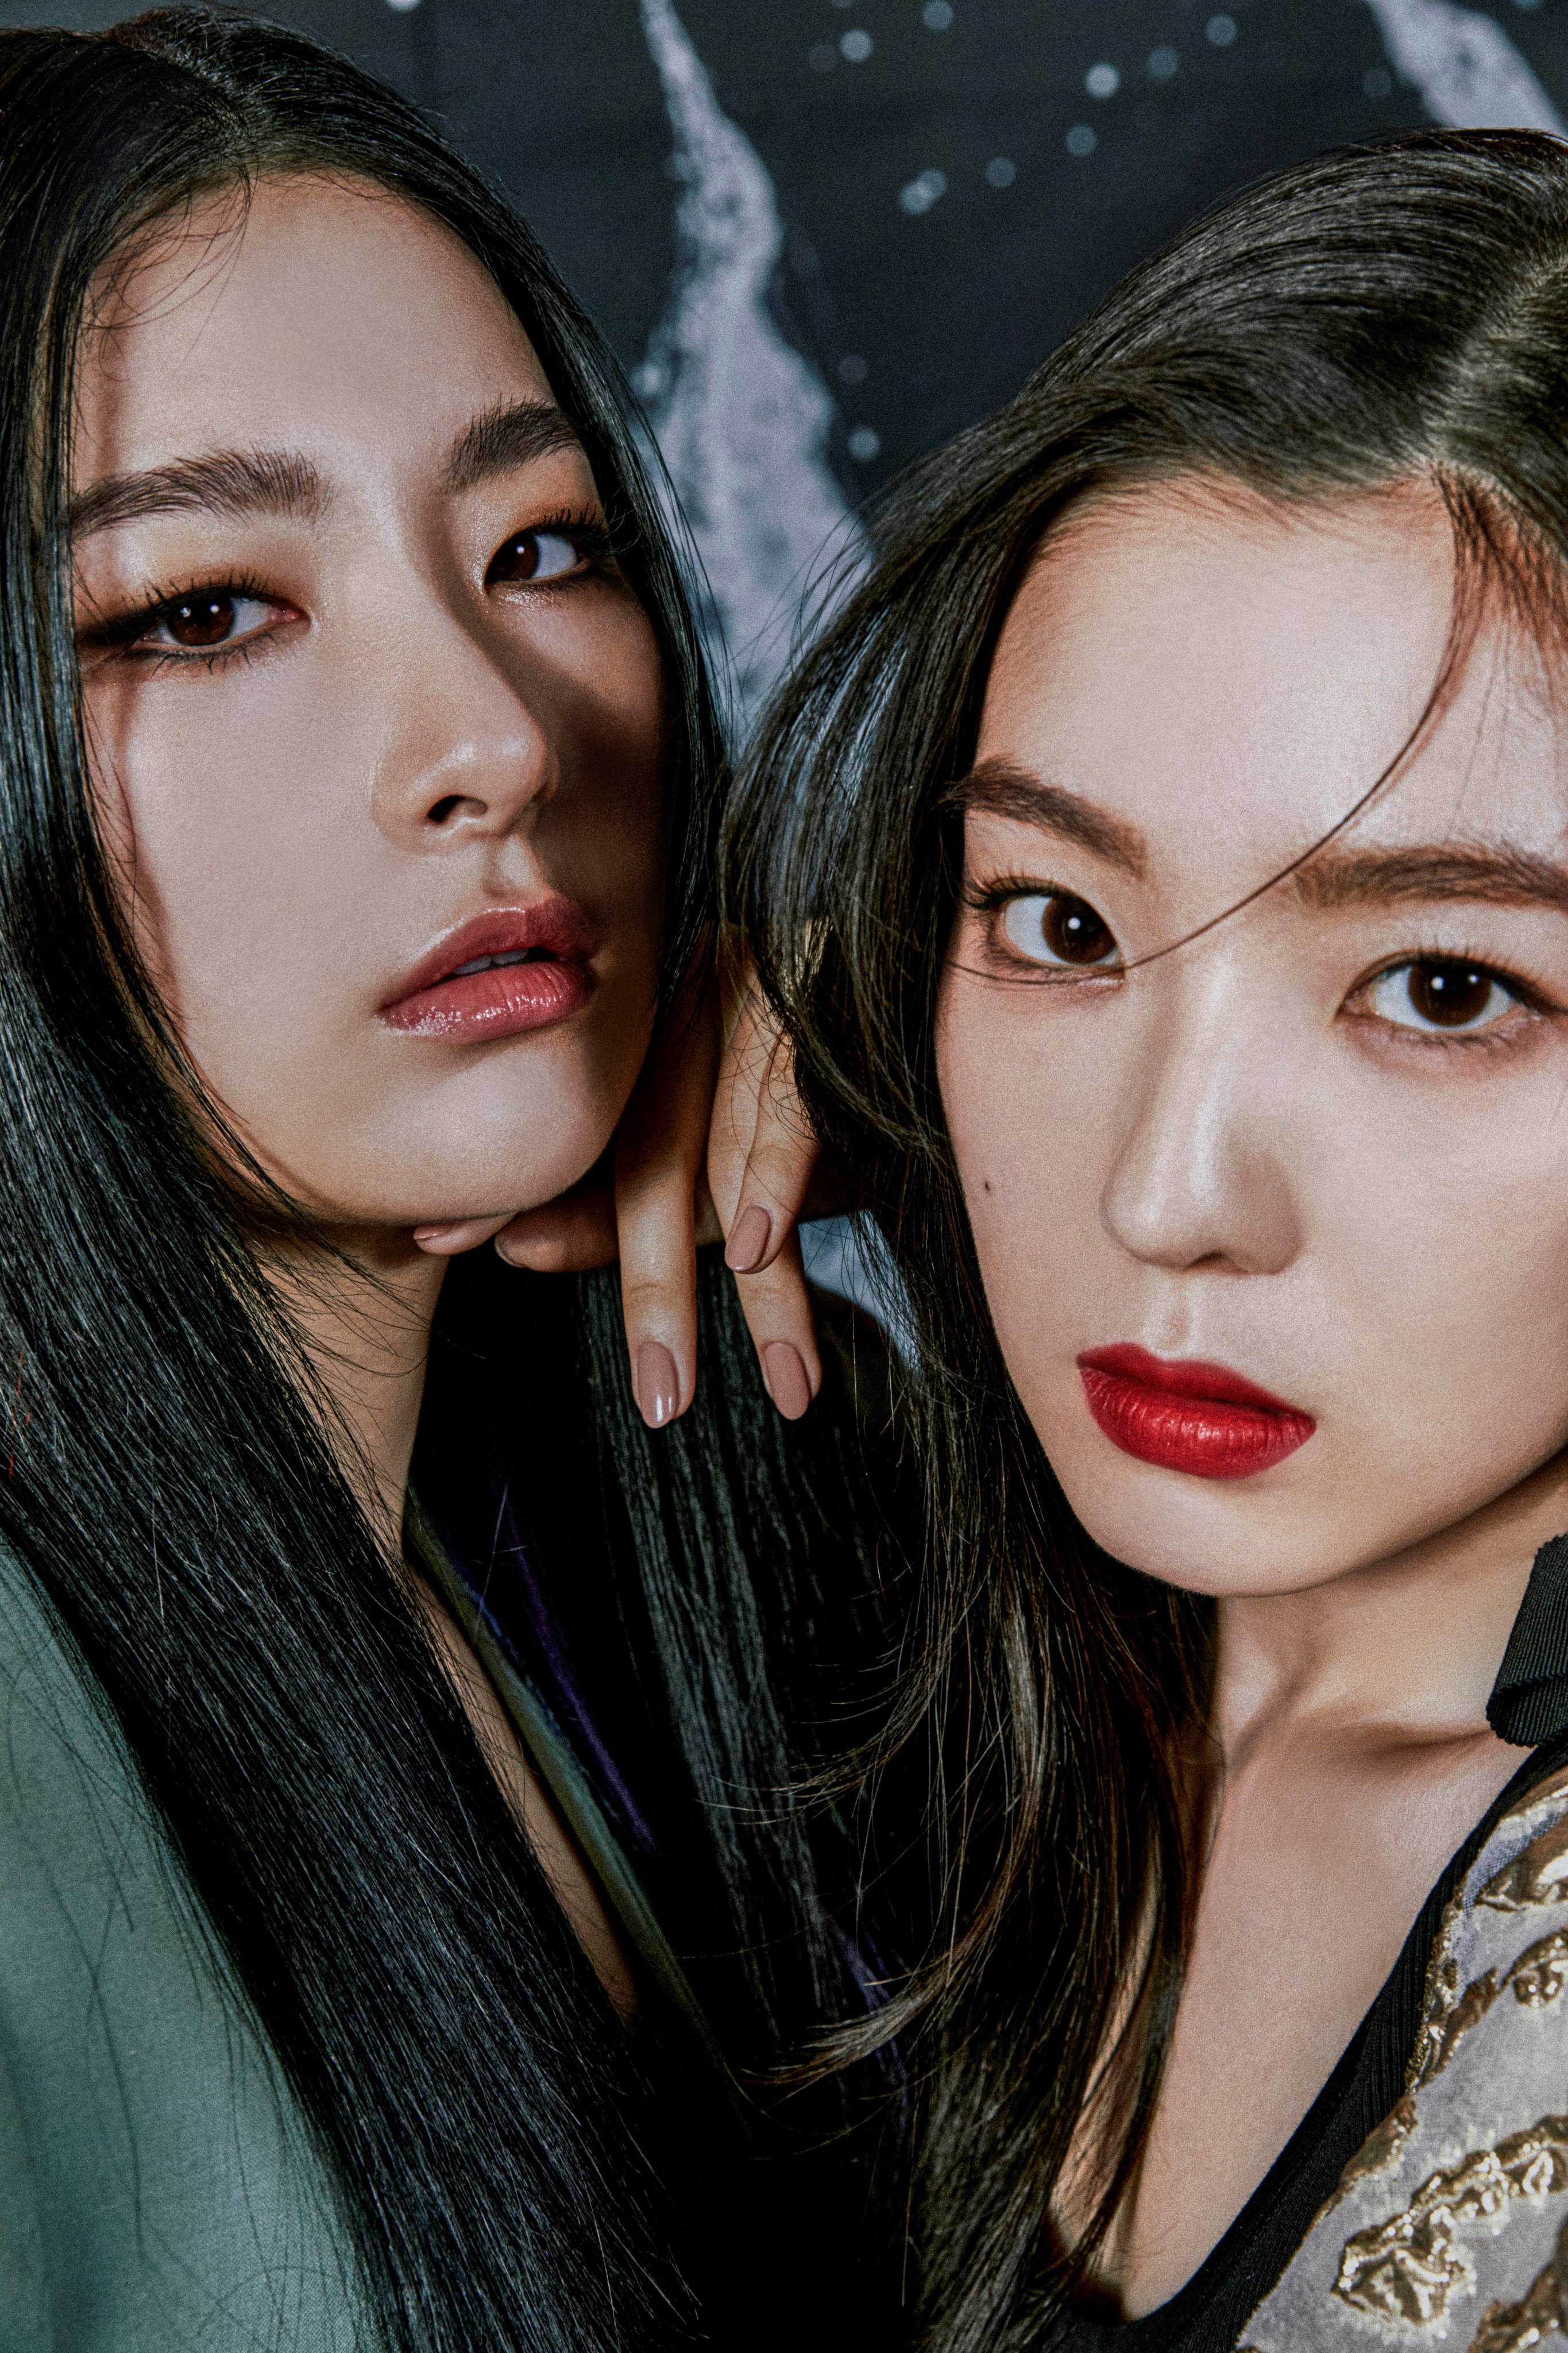 Red Velvet Irene And Seulgi Monster Teaser Photos 3 Hd Hq K Pop Database